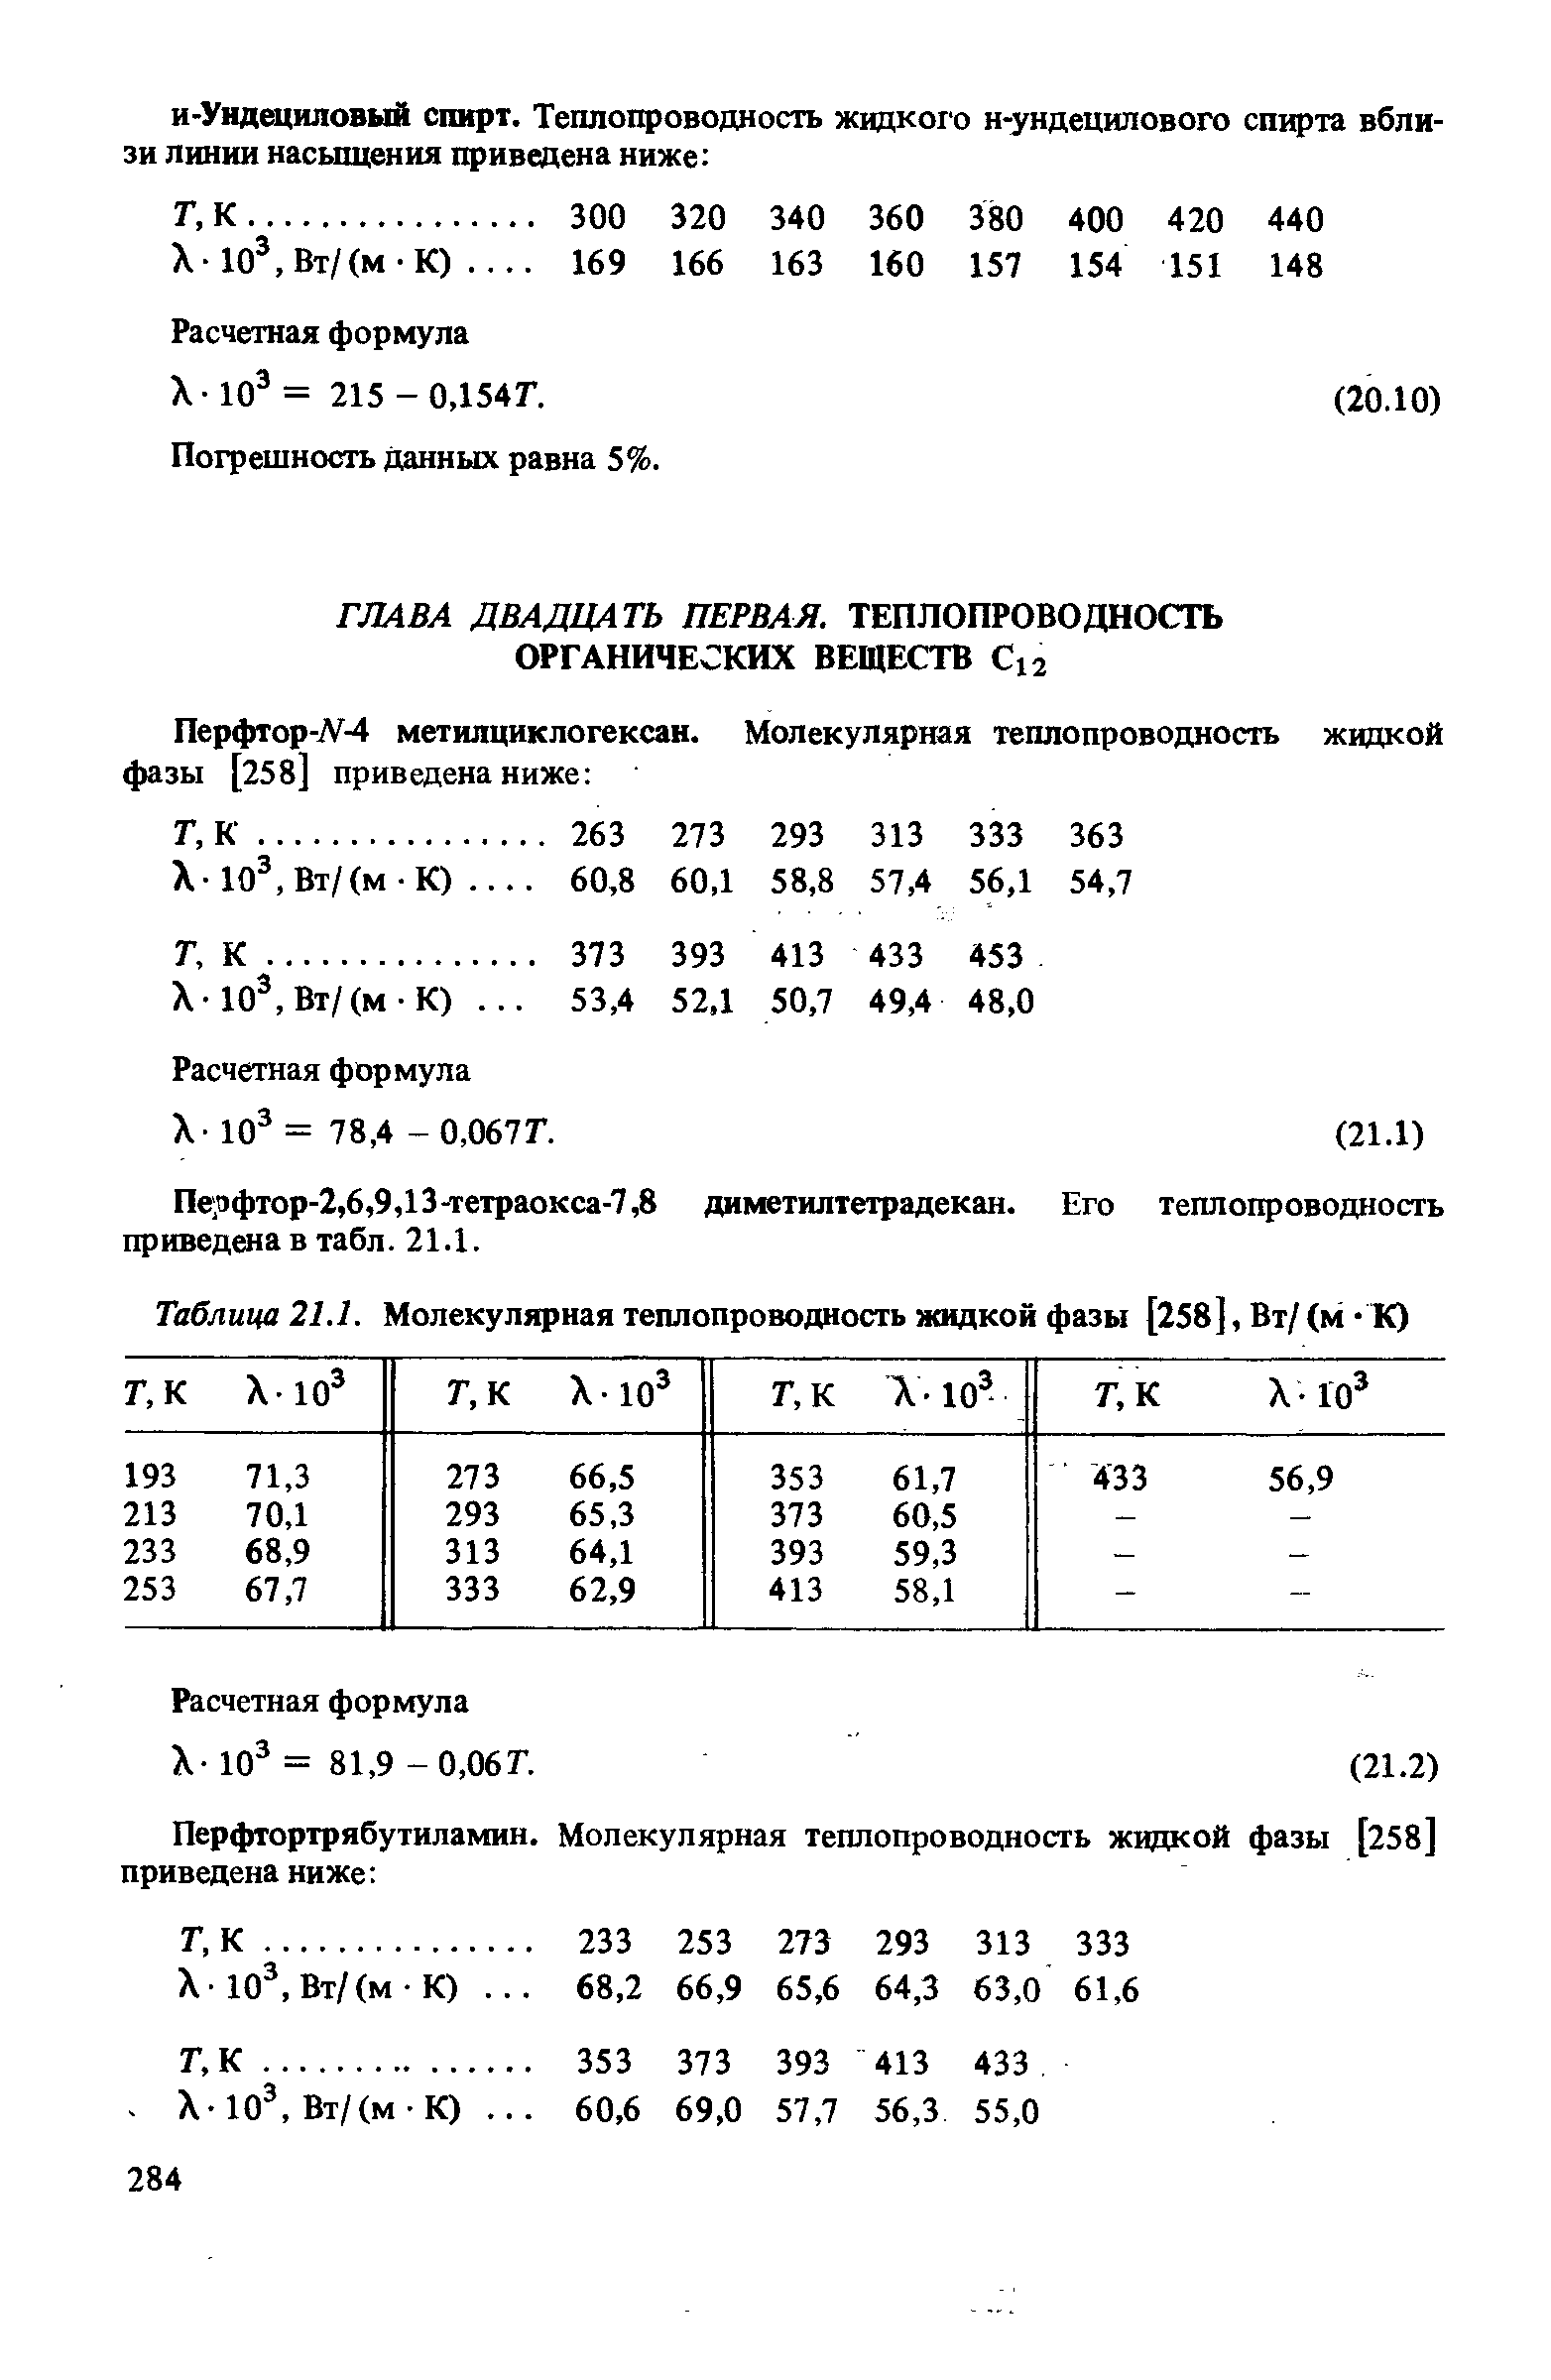 Расчетная формула X- Ю = 81,9 -0,06Г.
